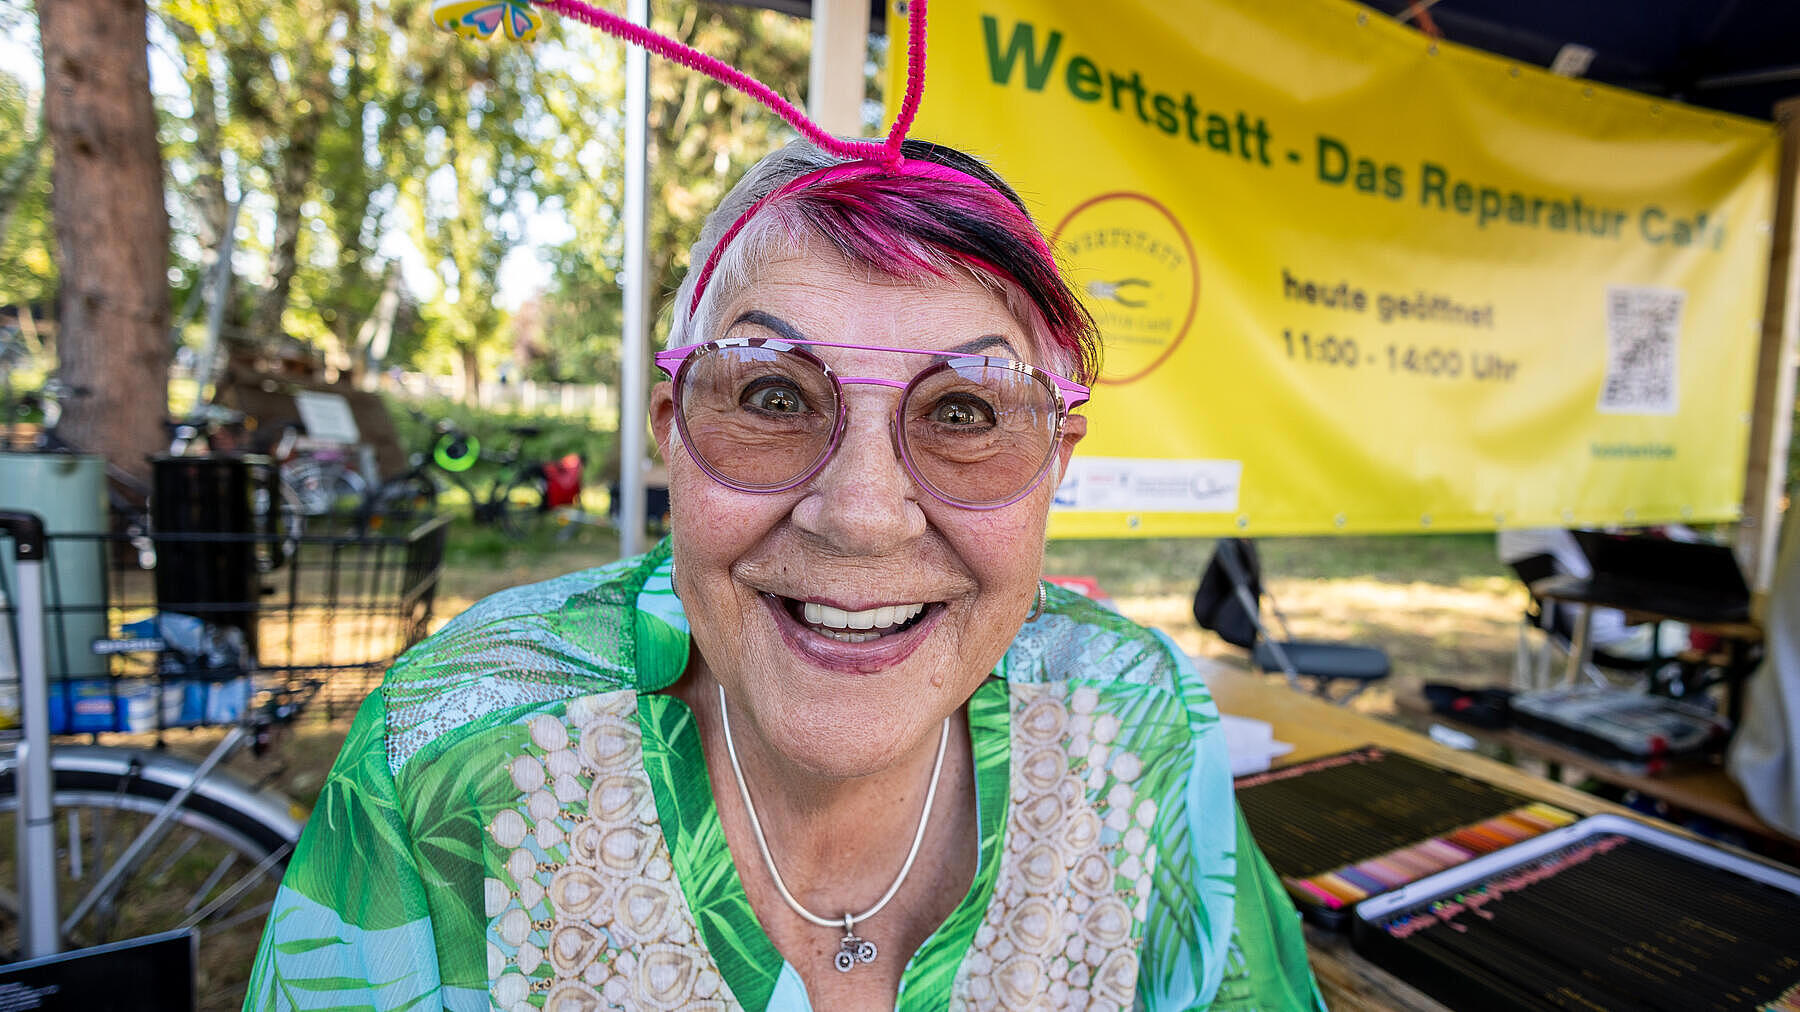 Außenaufnahme zeigt eine in die Kamera lachende, ältere Frau mit pinker Brille, pinken Haaren und einem selbstgebastelten Haarschmuck. 